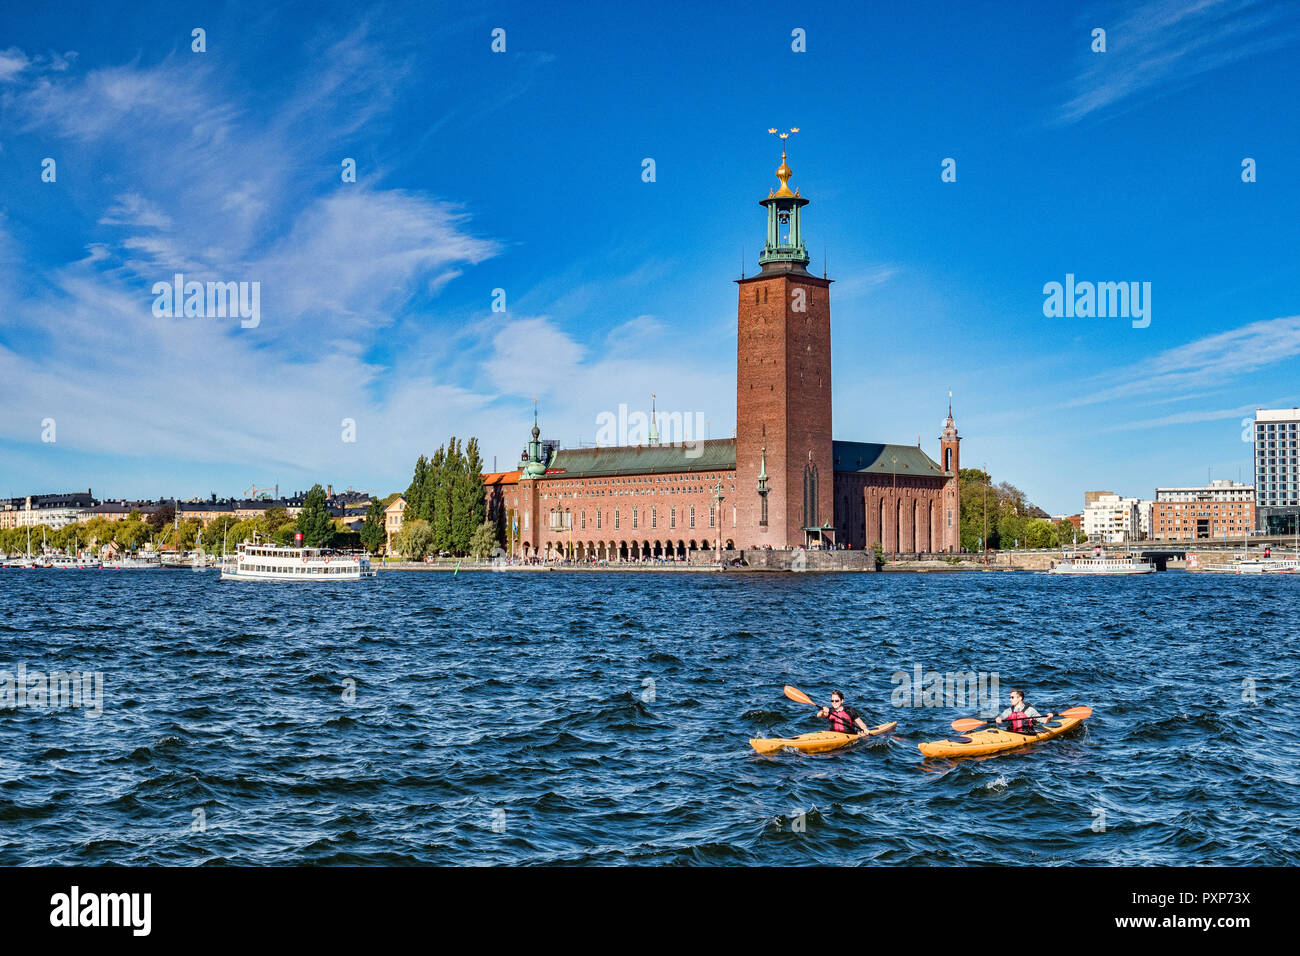 16 Septembre 2018 : Stockholm, Suède - L'hôtel de ville, l'emplacement du Prix Nobel, de banquets et deux kayaks à l'eau. Banque D'Images